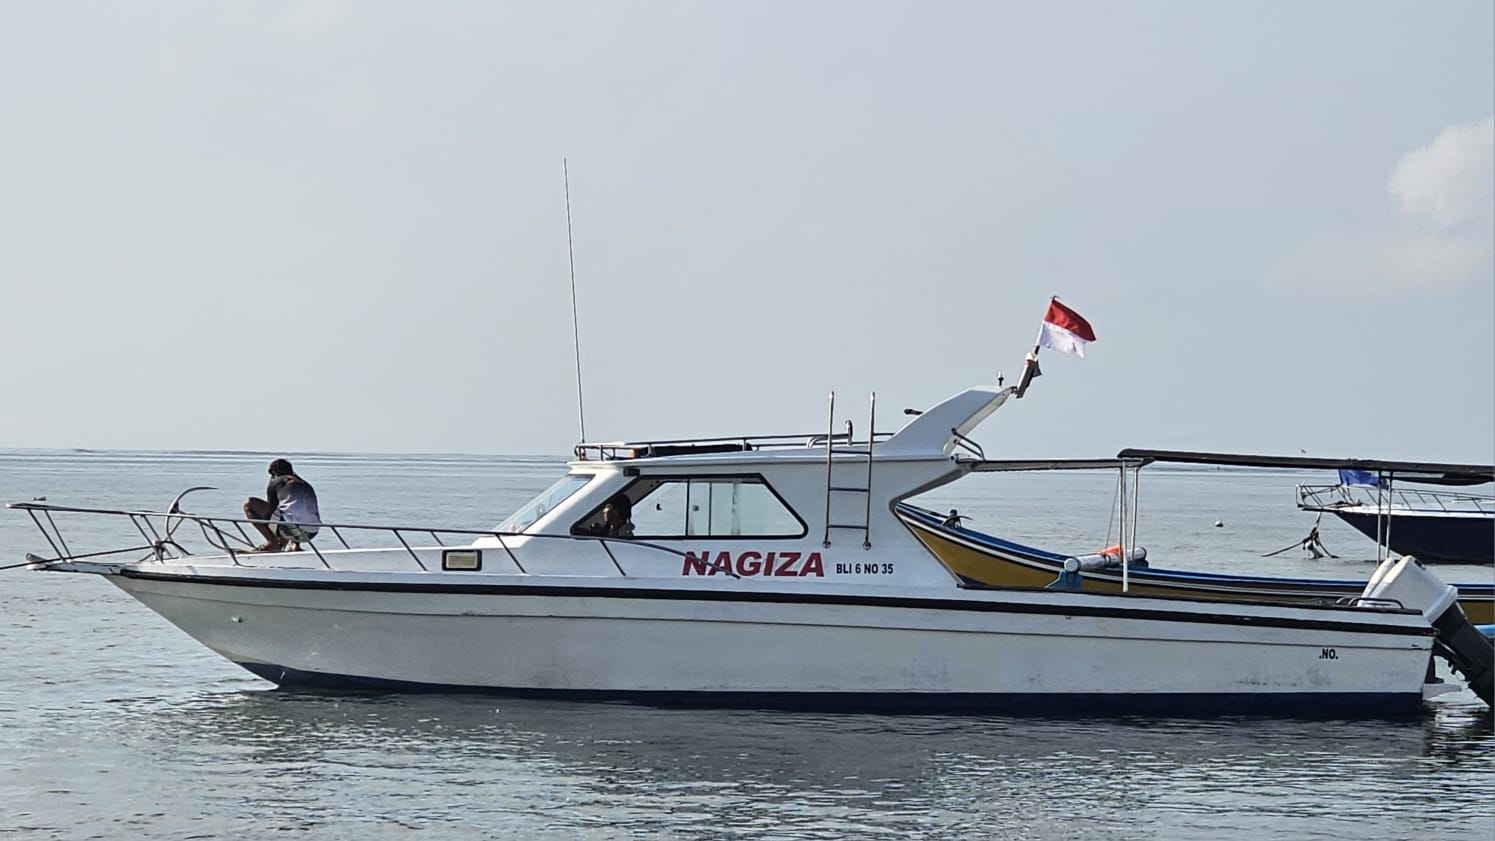 Nagiza Boat